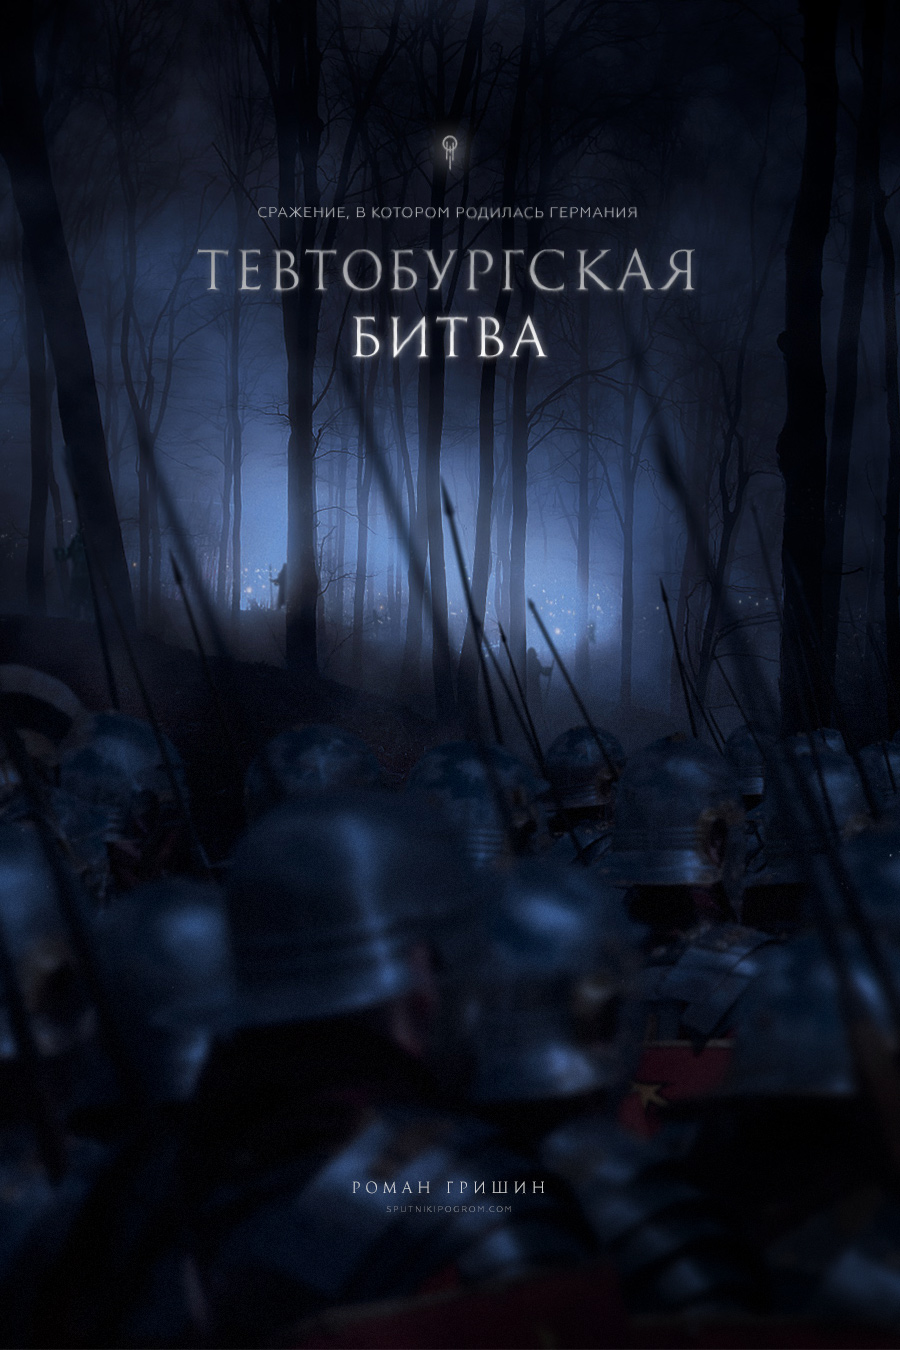 Тевтобургская битва TEVT-COVER-v3-logo